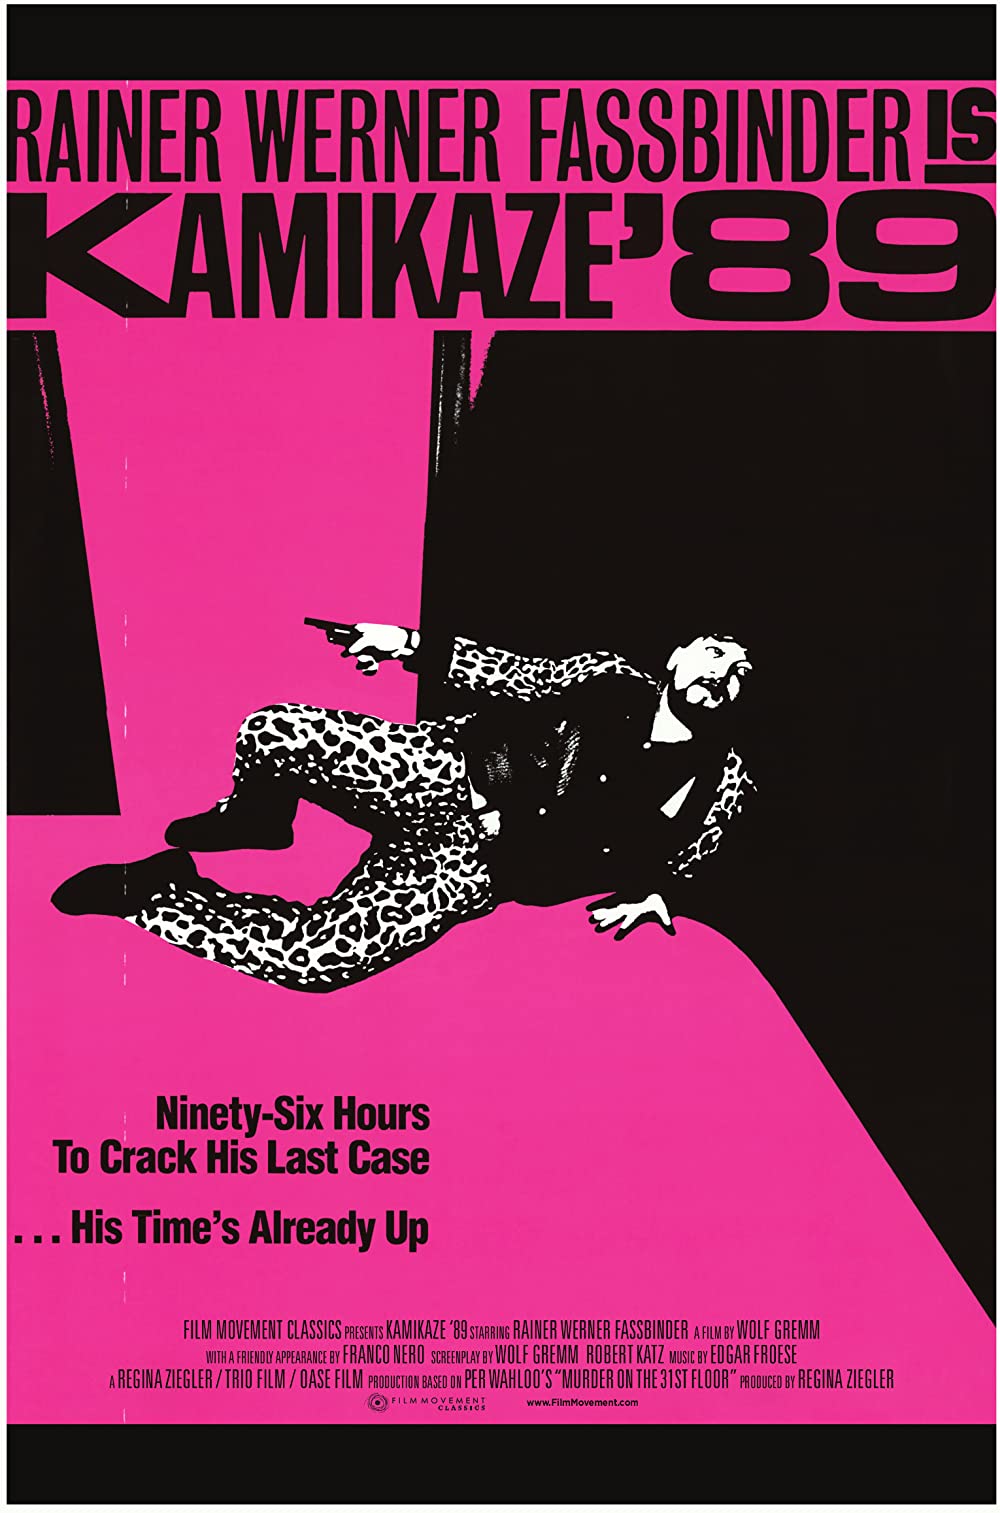 Kamikaze 1989